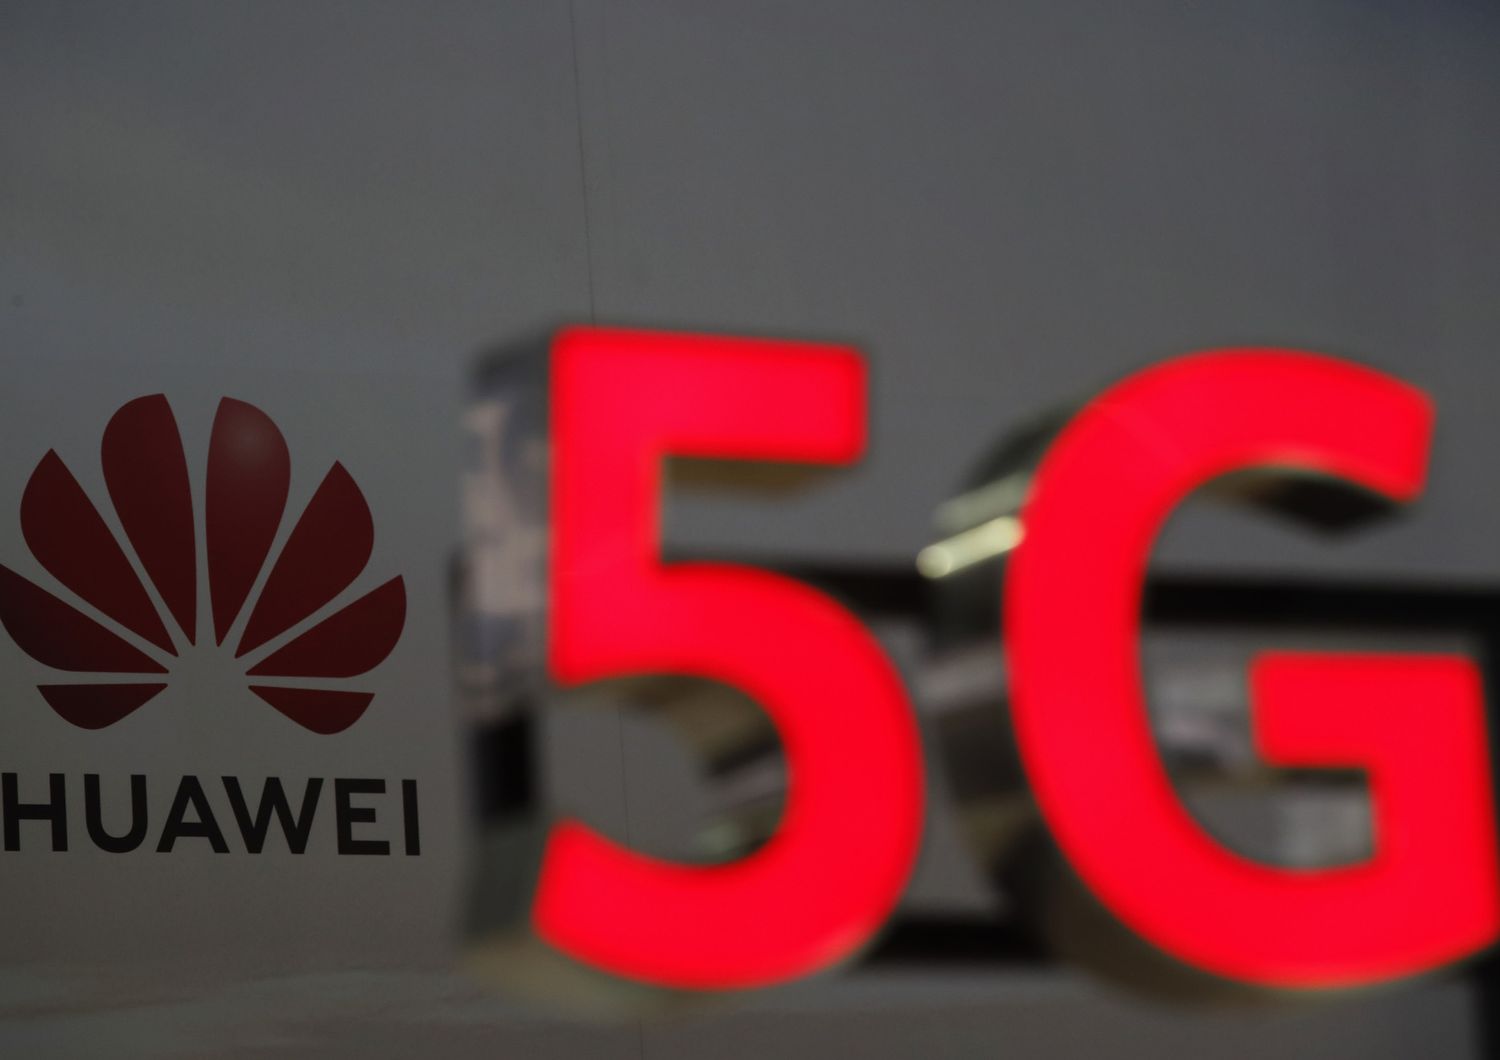 5G di Huawei